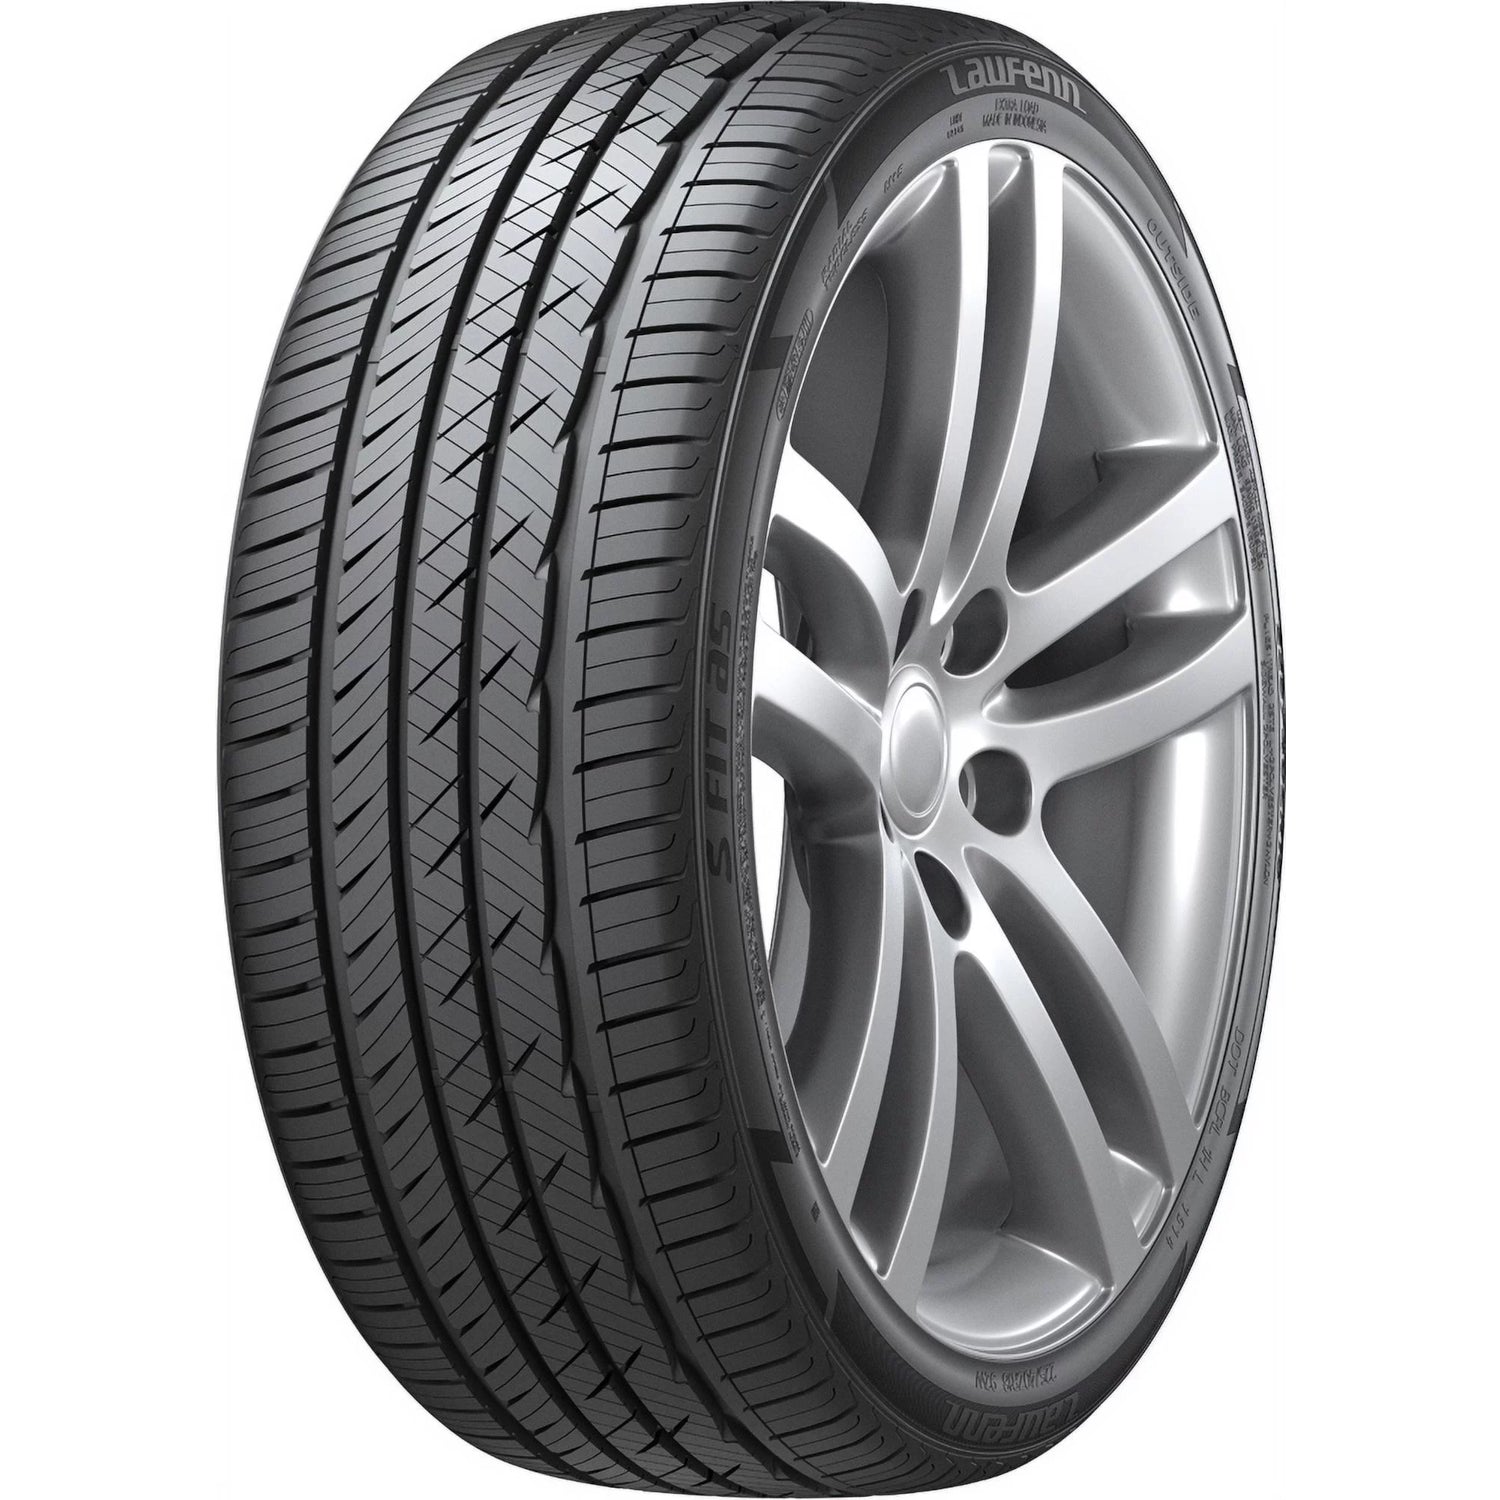 LAUFENN S FIT AS 225/60R18 (28.6X8.9R 18) Tires